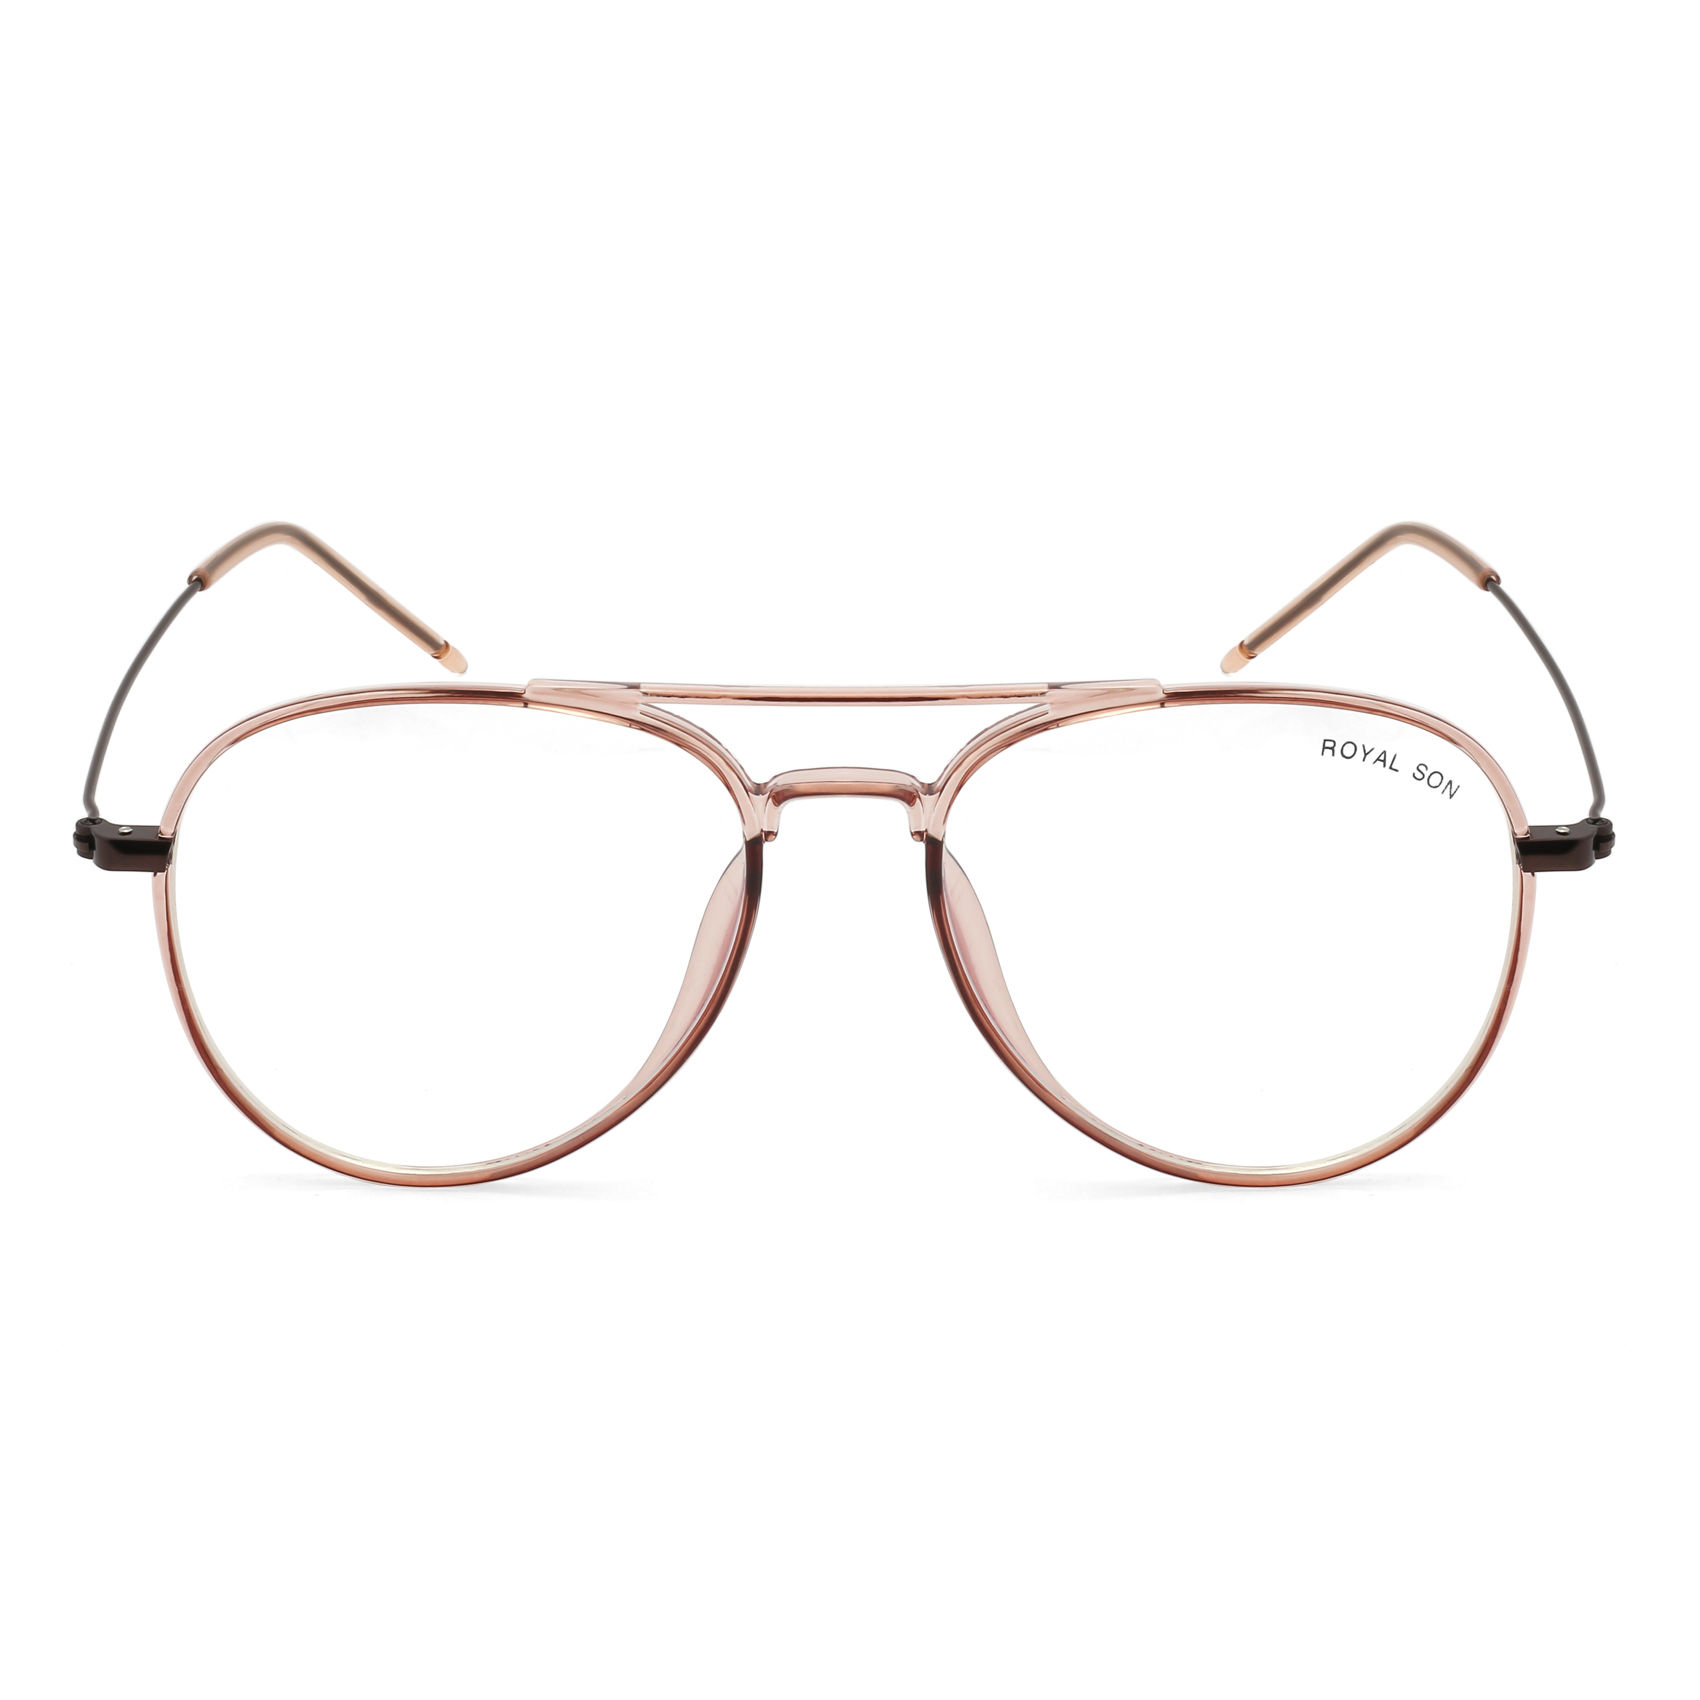 Titanium Screwless Design Aviator Eyeglass Frames Weight: 10.5gr.